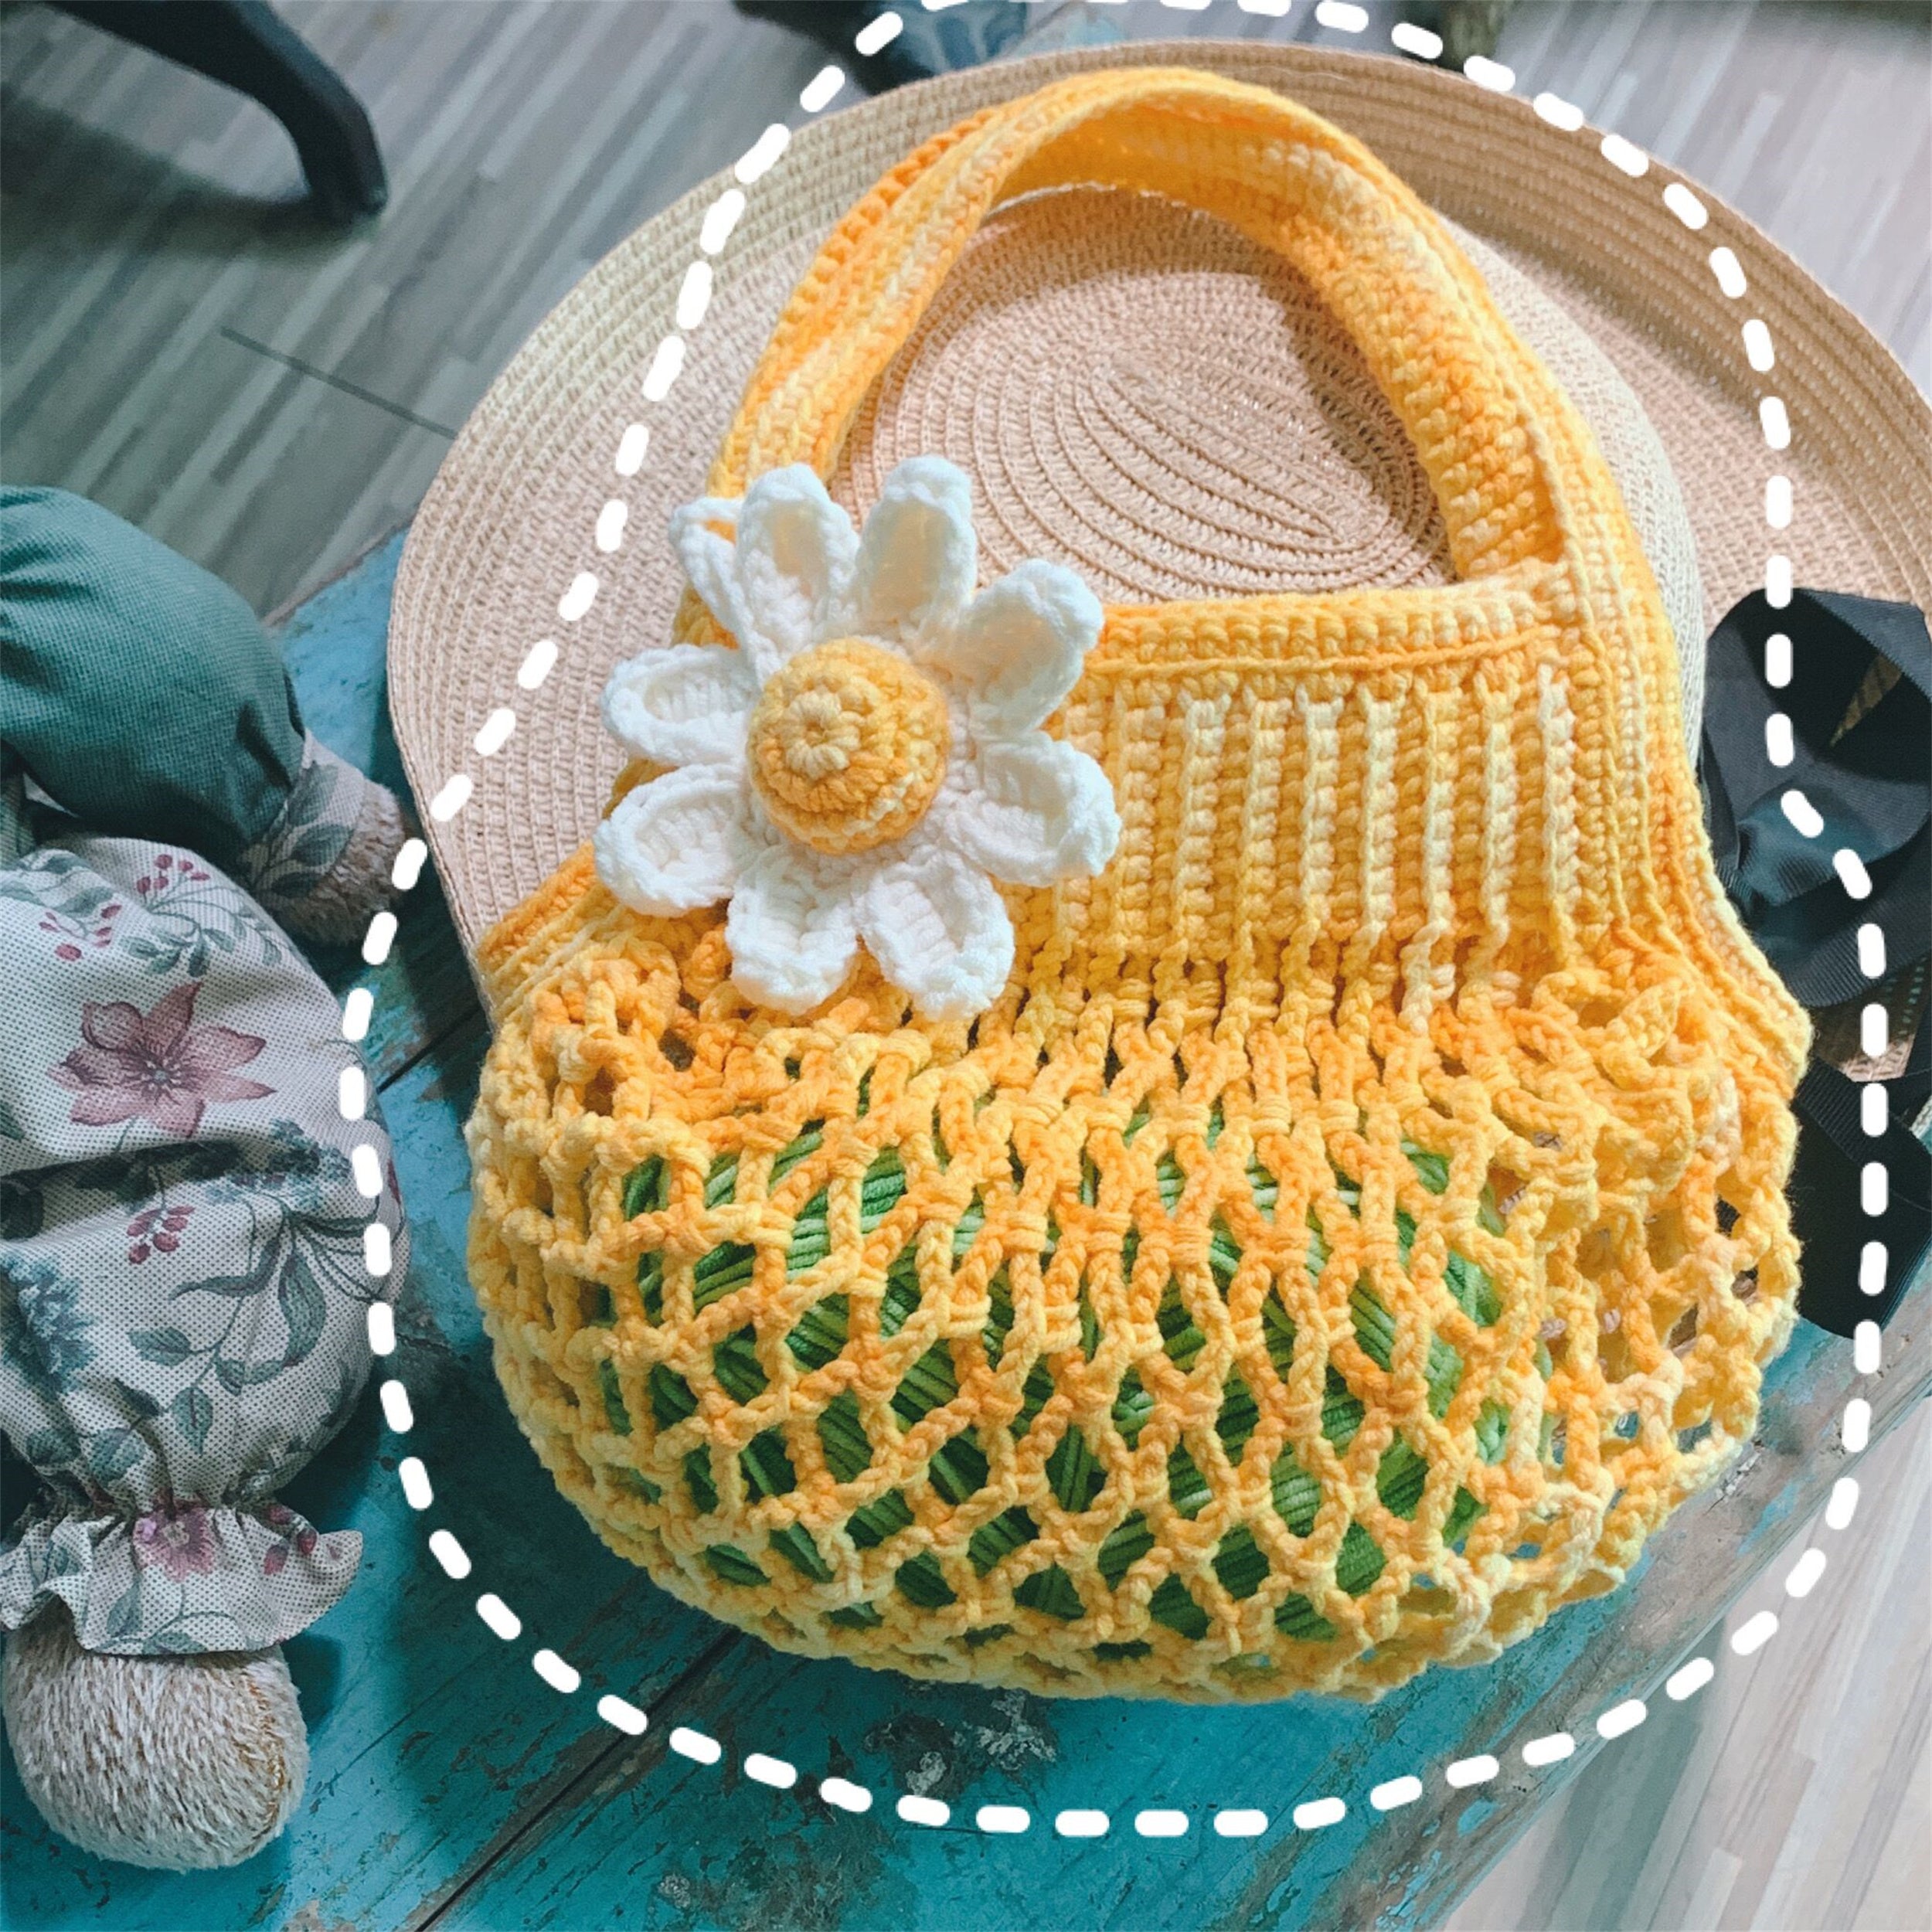 Fishing Net bag Crochet Kit